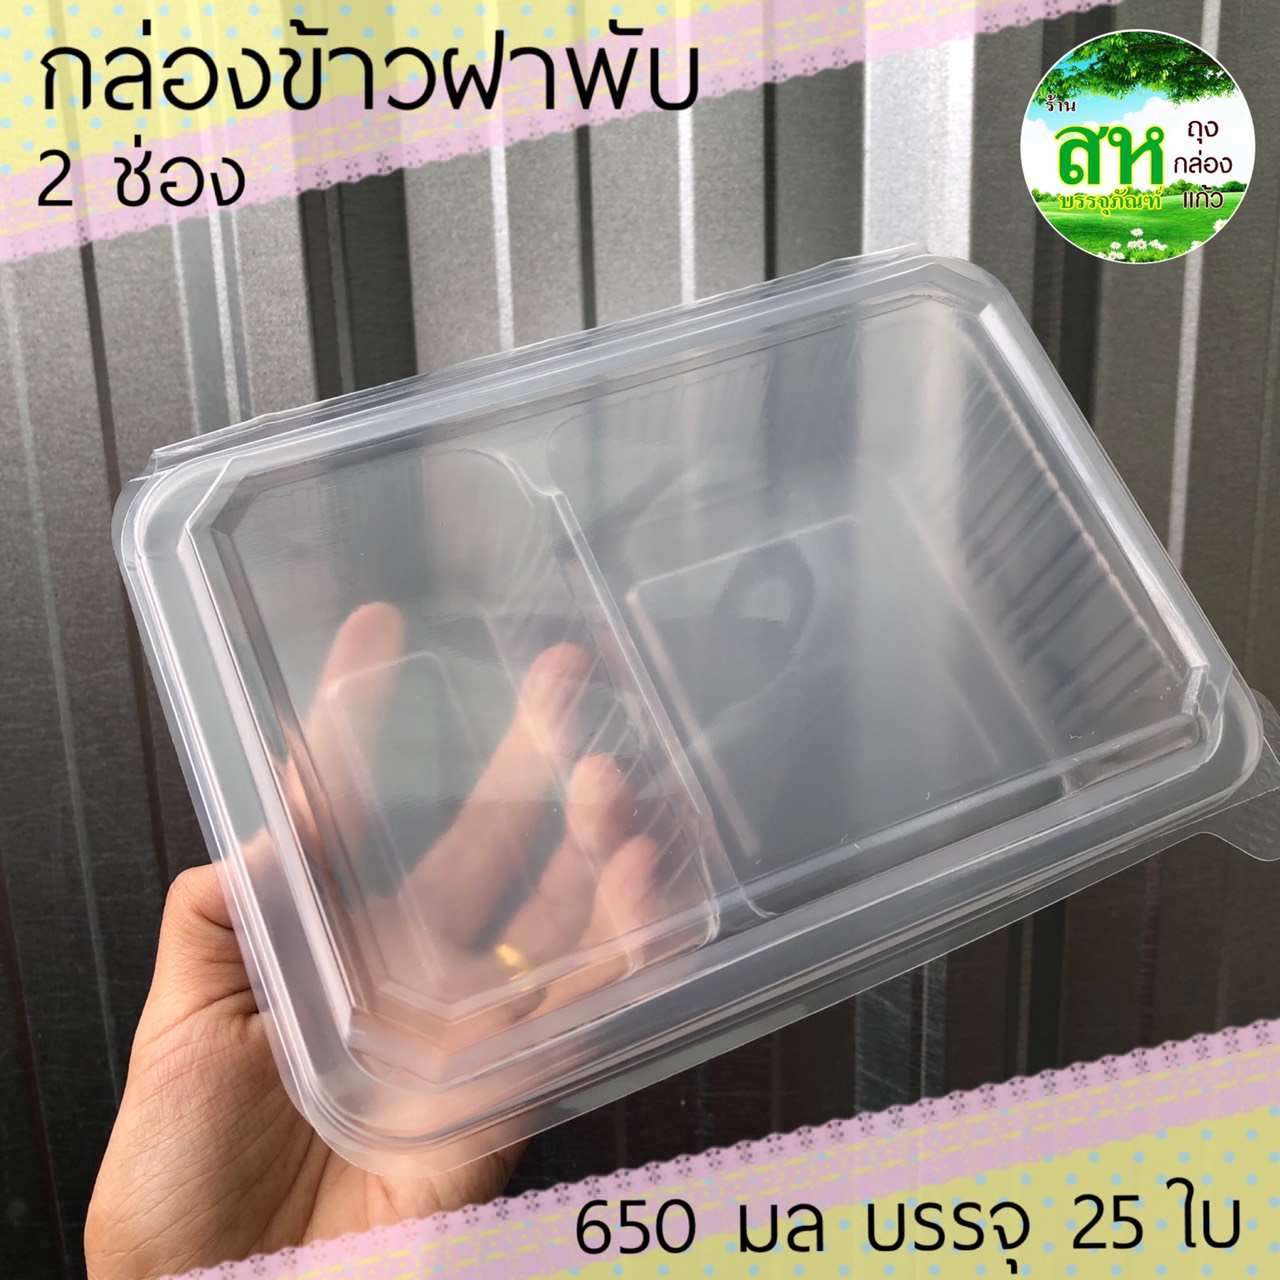 (25ใบ)กล่องข้าว กล่องอาหาร ฝาพับ 2 ช่อง EPP ข้าวกล่อง กล่องข้าวเดลิเวอรี่ Lineman foodpanda grabfood